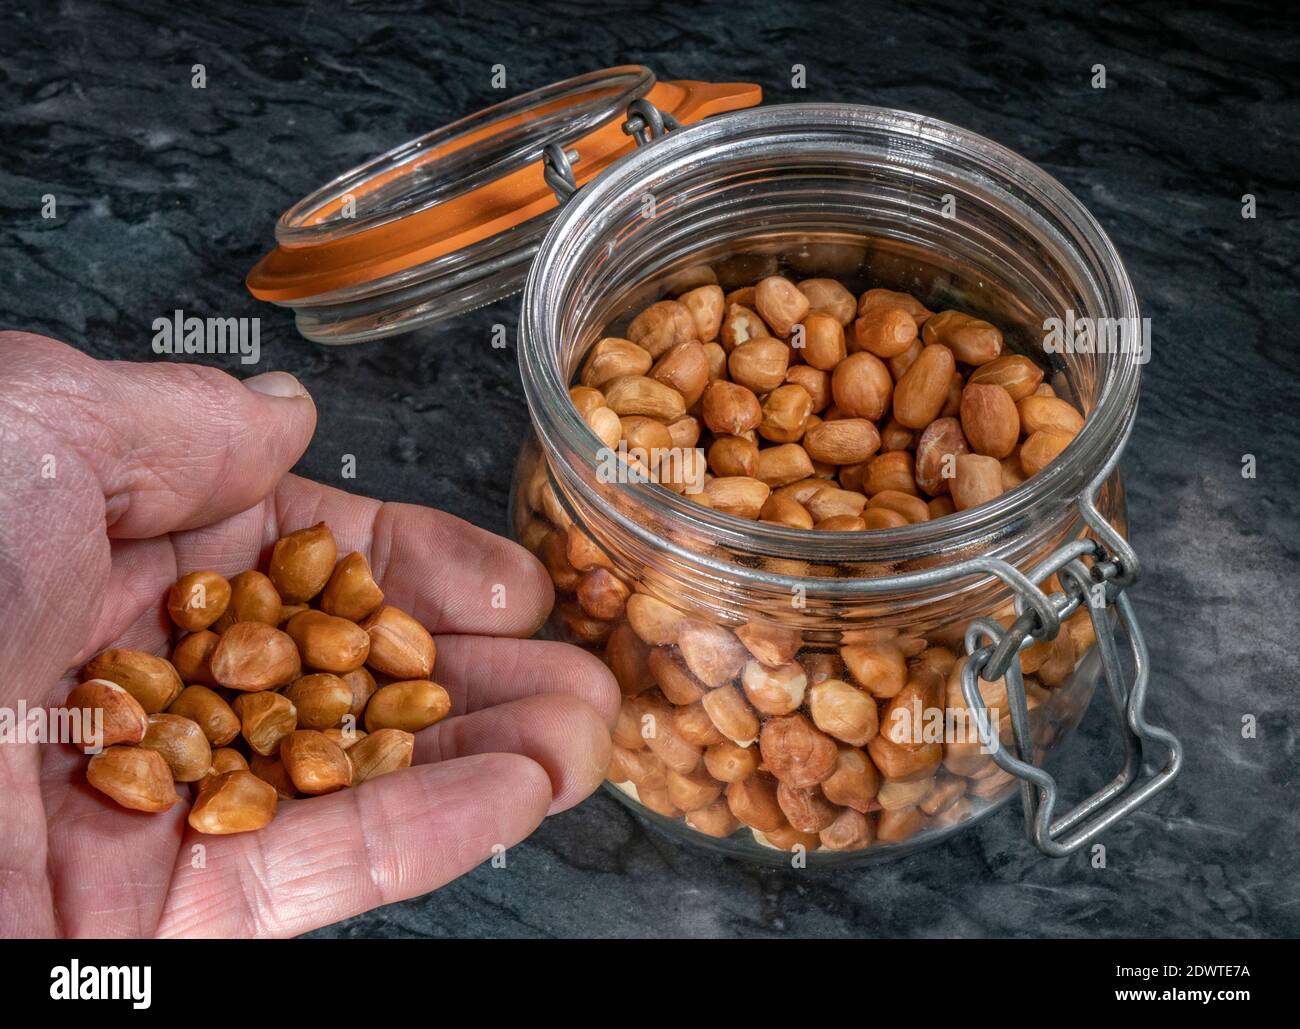 Nahaufnahme der Hand eines Mannes, der rohe Erdnüsse hält (Samenmantel / Schalen intakt), aus einem Glas-Vorratsglas, mit Metallverschluss und luftdichtem Deckel mit Gummidichtung. Stockfoto